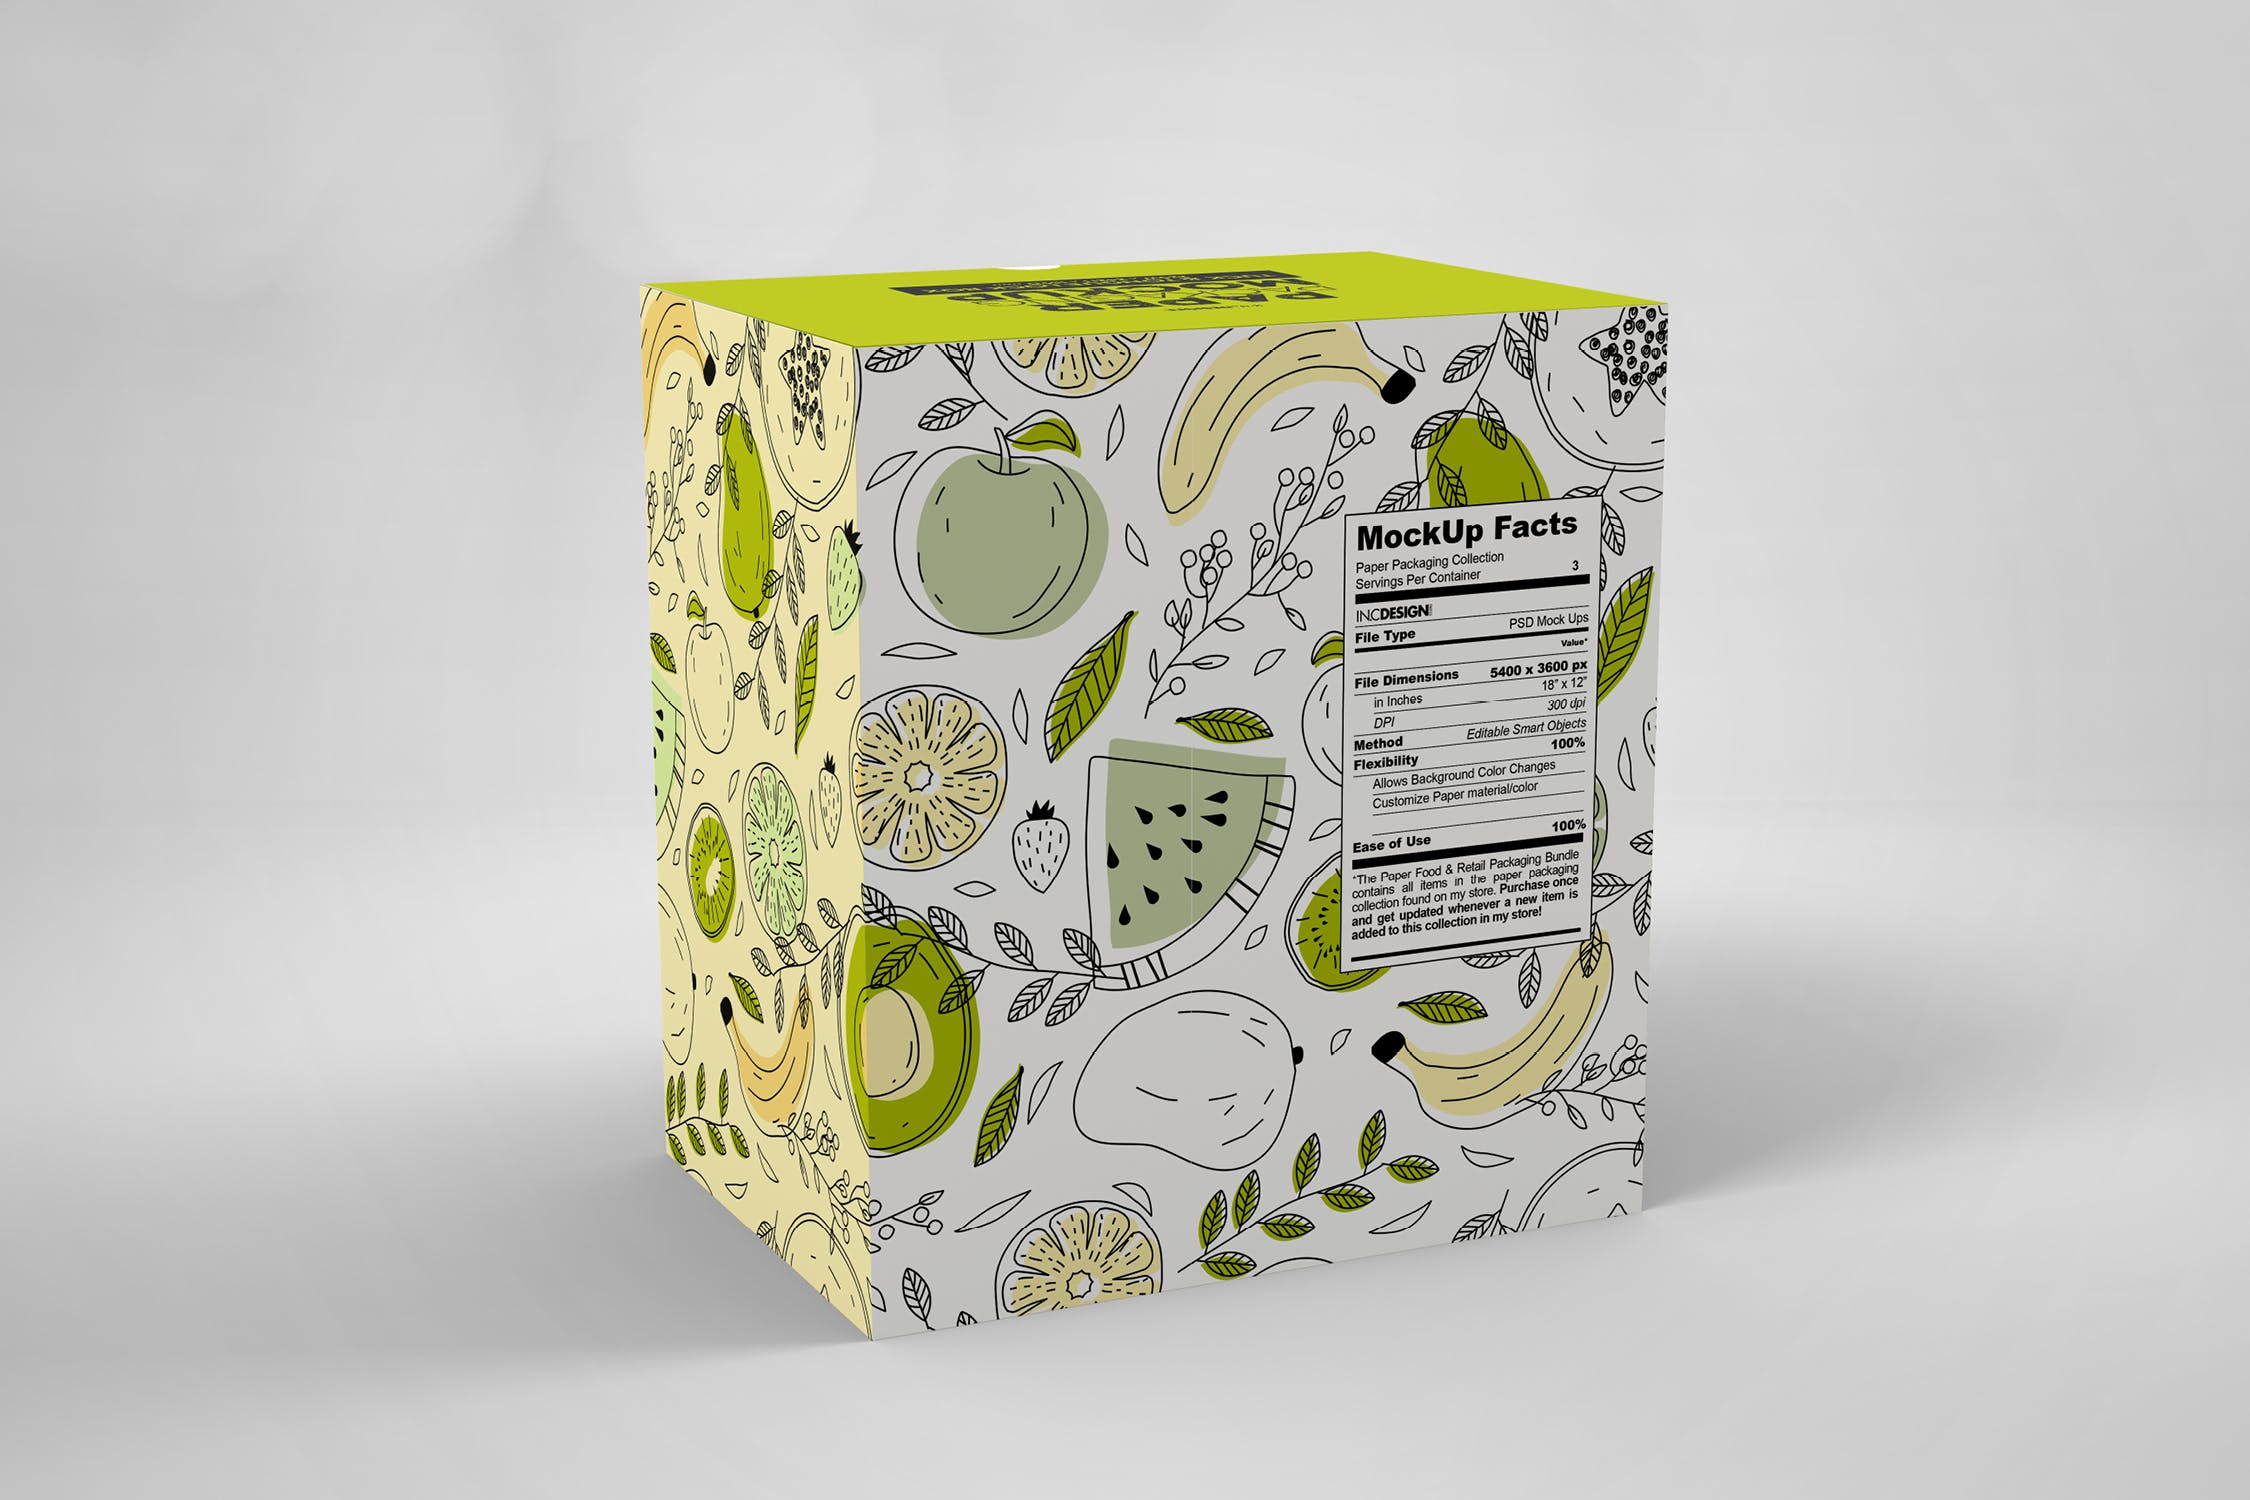 产品包装纸盒外观设计样机模板 Paper Box Tuck & Tongue Lock Mockup插图(2)